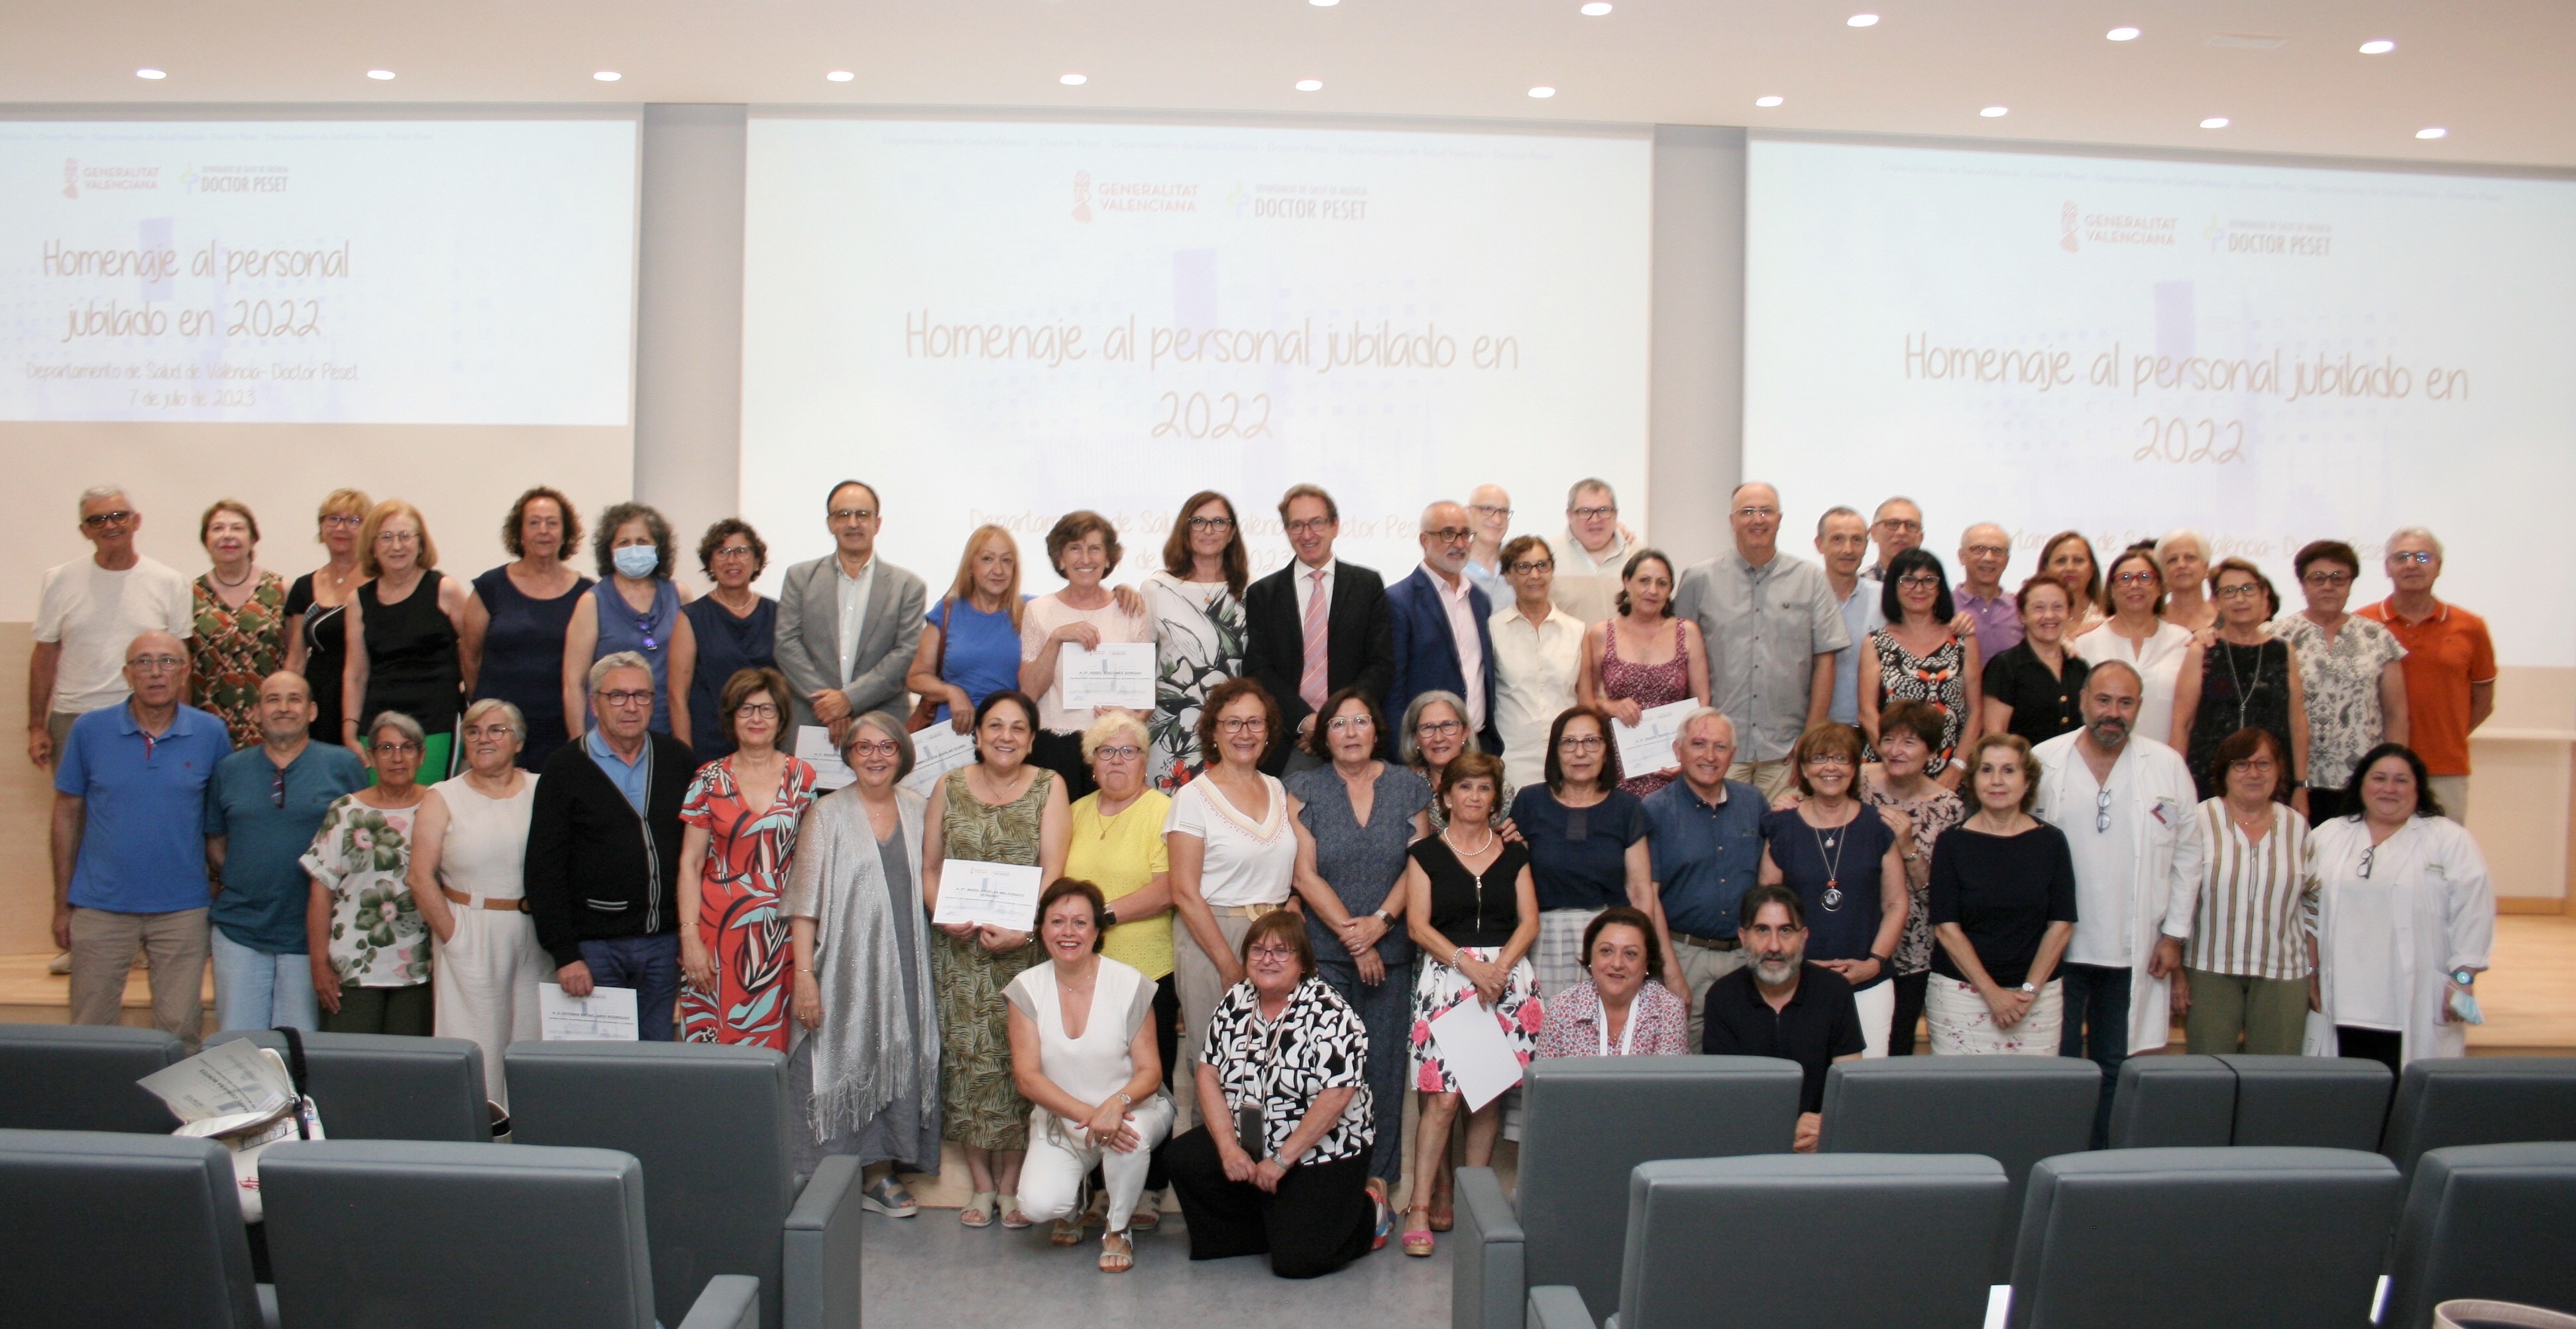 El Departament de Salut de València – Doctor Peset ret homenatge a 128 professionals que s'han jubilat en 2022